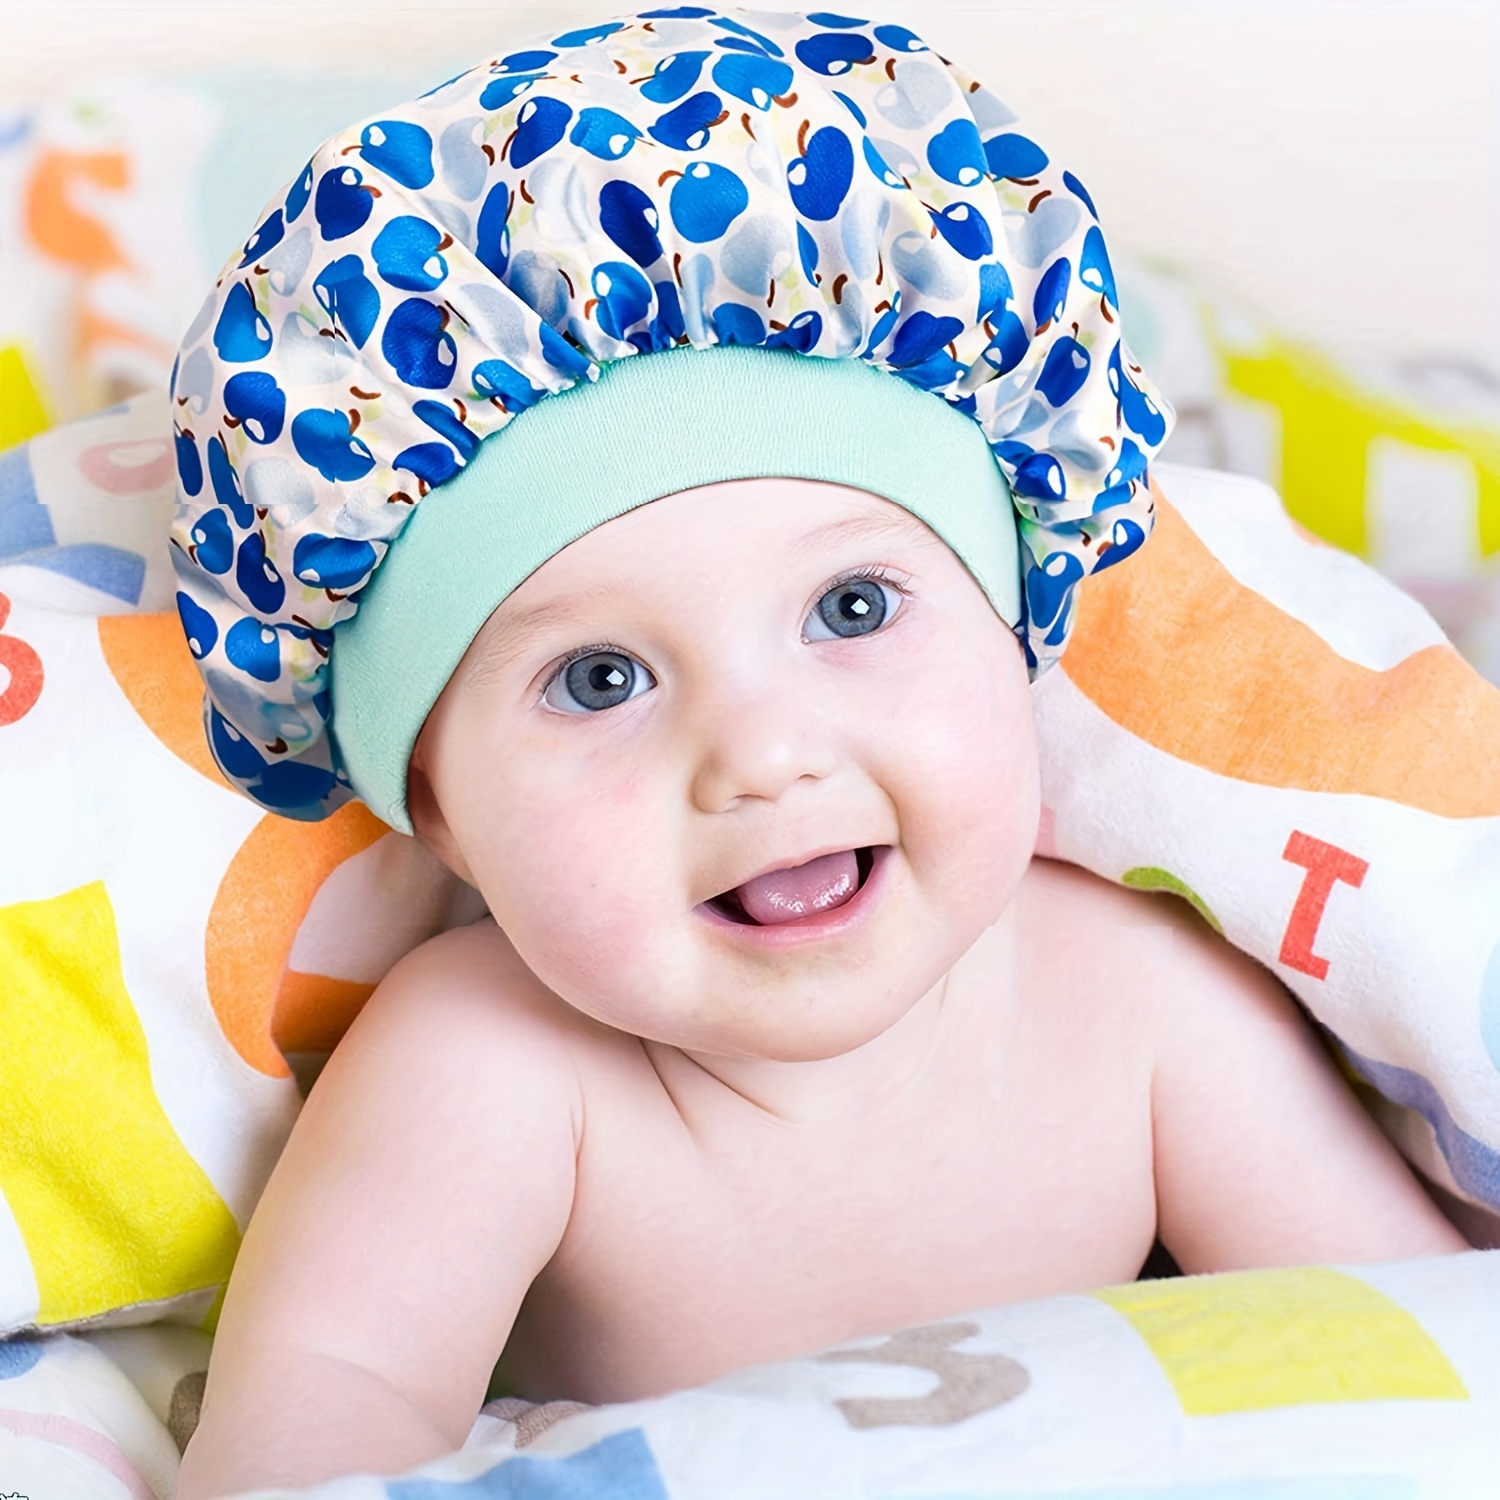 BONNET DE NUIT ENFANT EN SATIN POUR DORMIR – Naturally Pretty